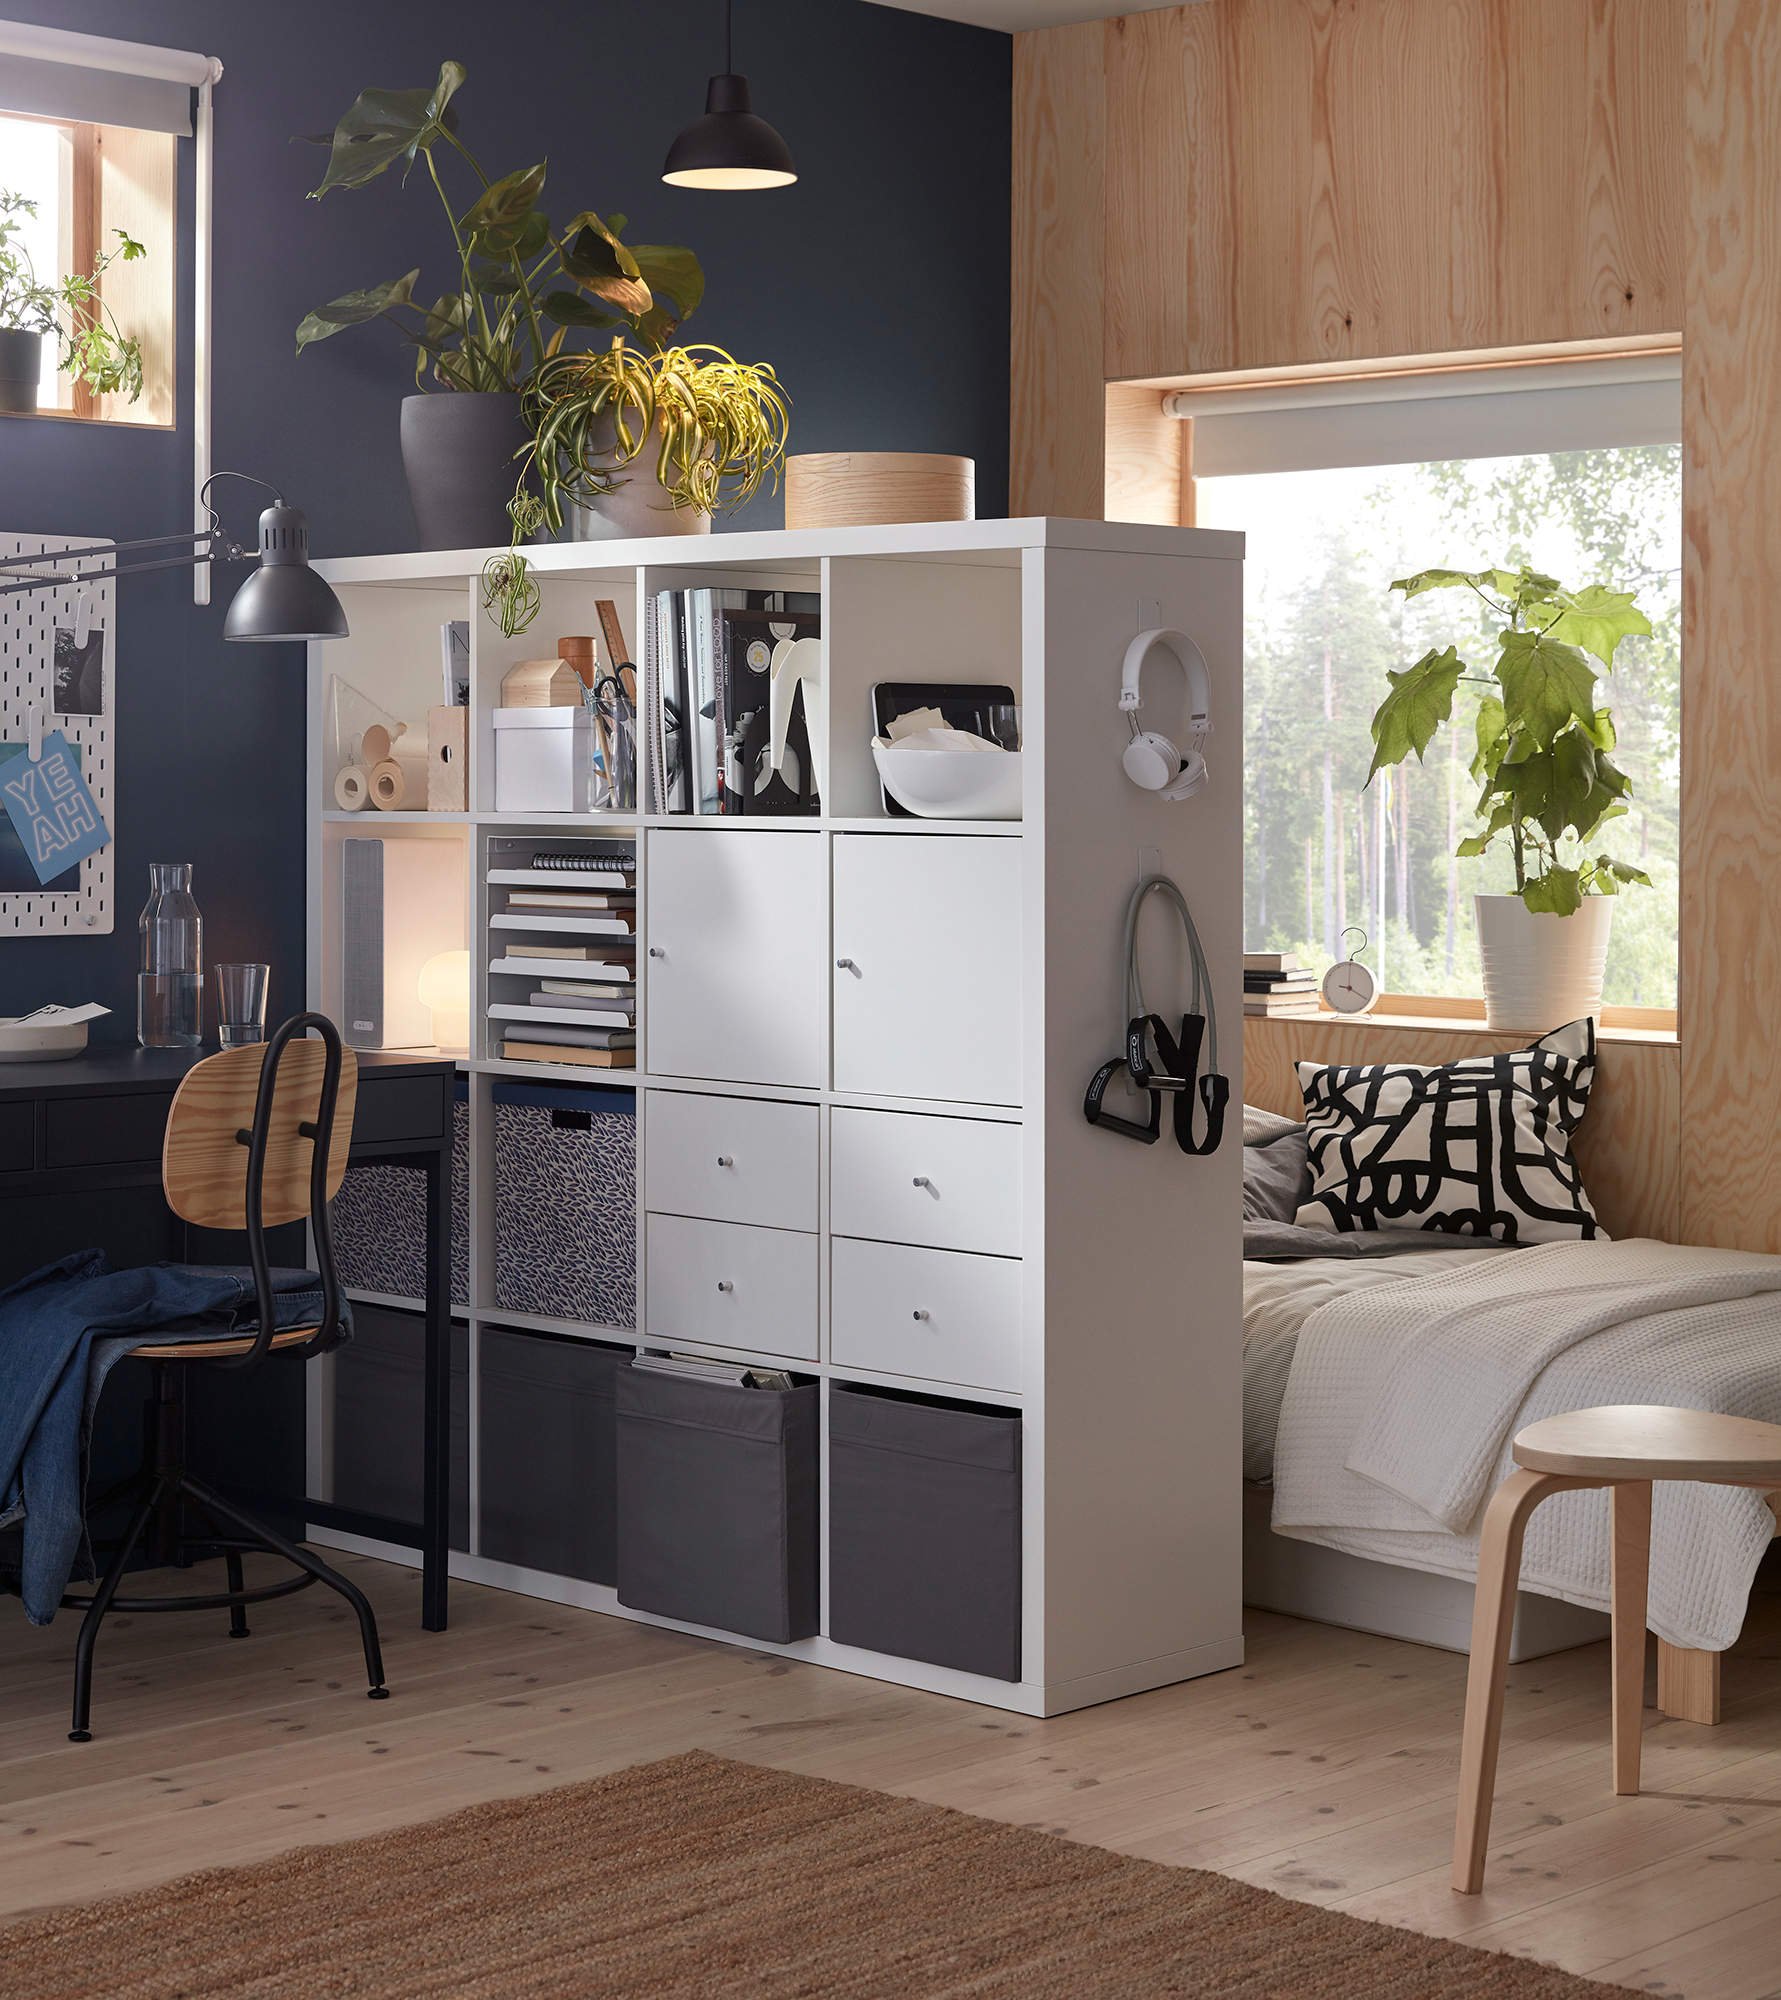 Estanteri´a KALLAX de IKEA como elemento separador de ambientes.